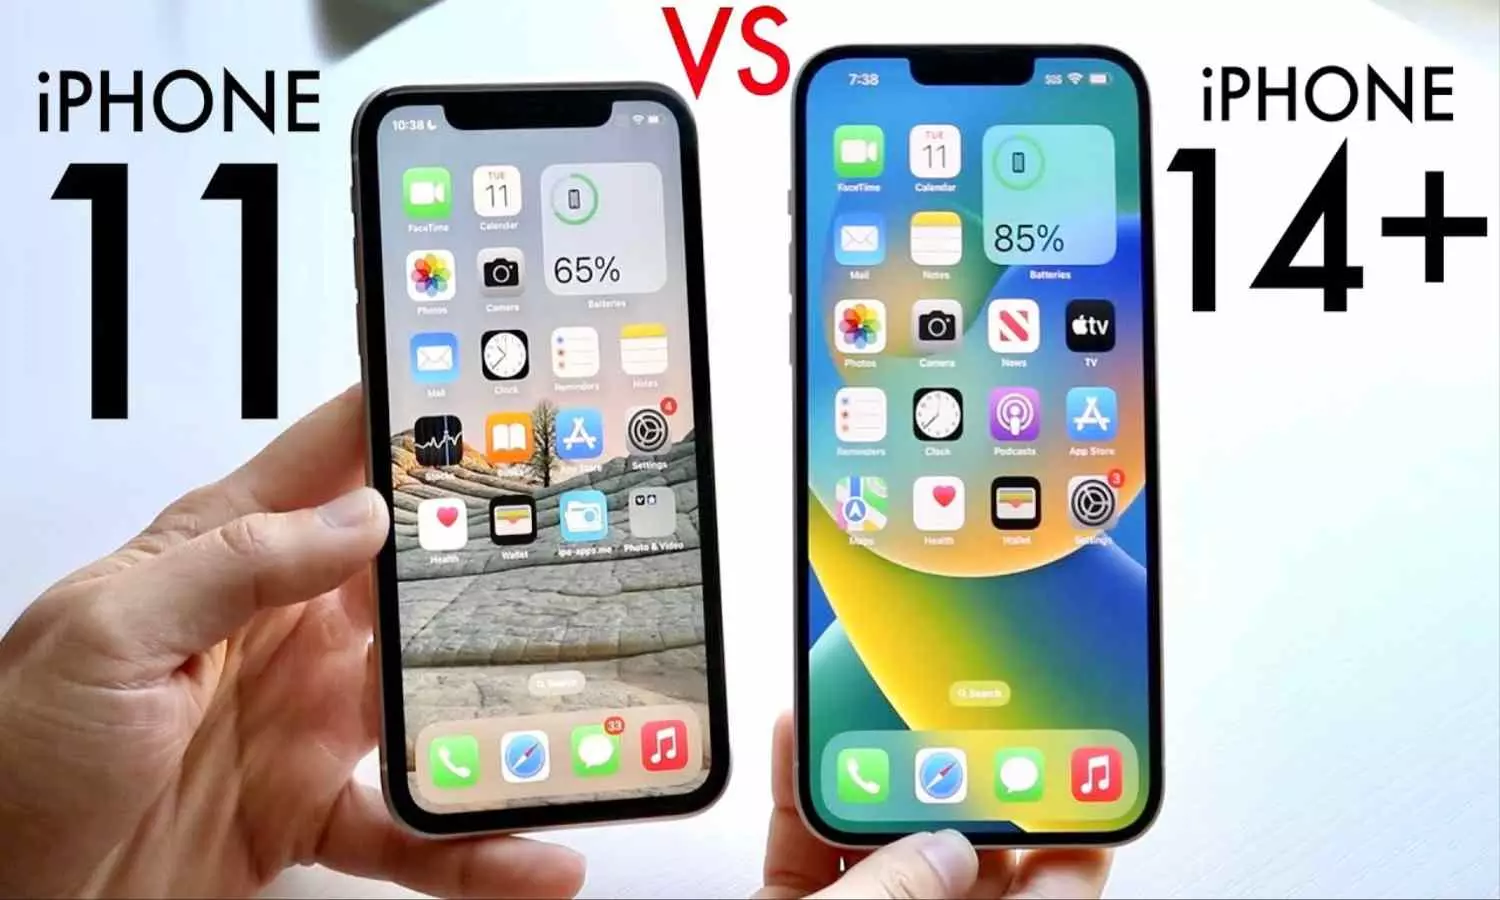 Apple iPhone 11 vs iphone 14 Plus